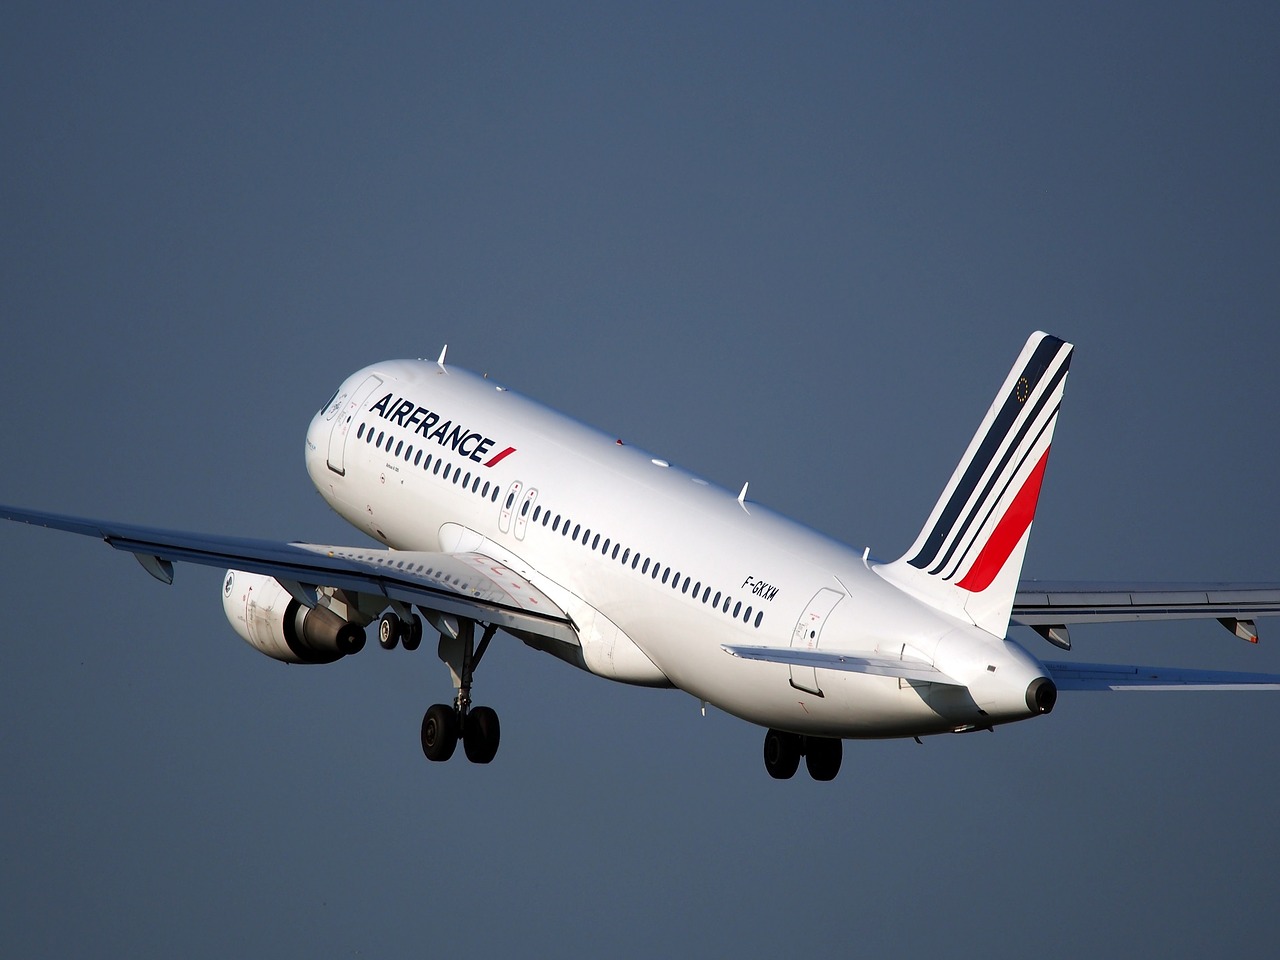 Le conflit se poursuit à Air France avec le départ du PDG